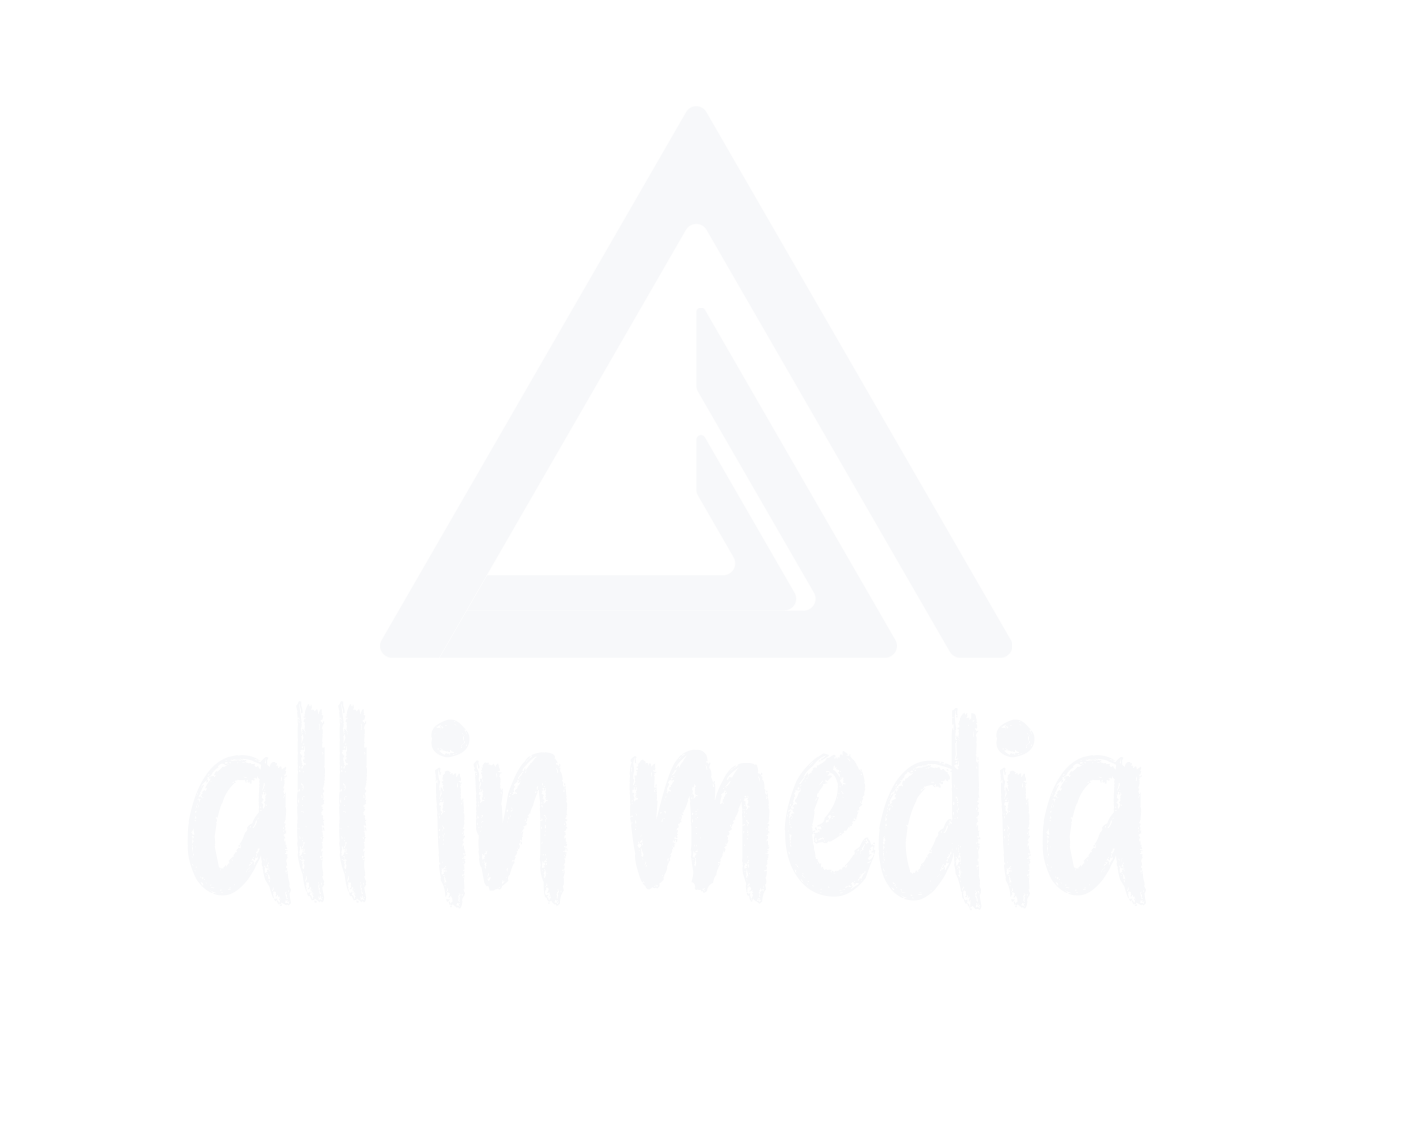 All in Media - Sosyal Medya Yönetimi - Web Tasarım & Yazılım - SEO Bodrum